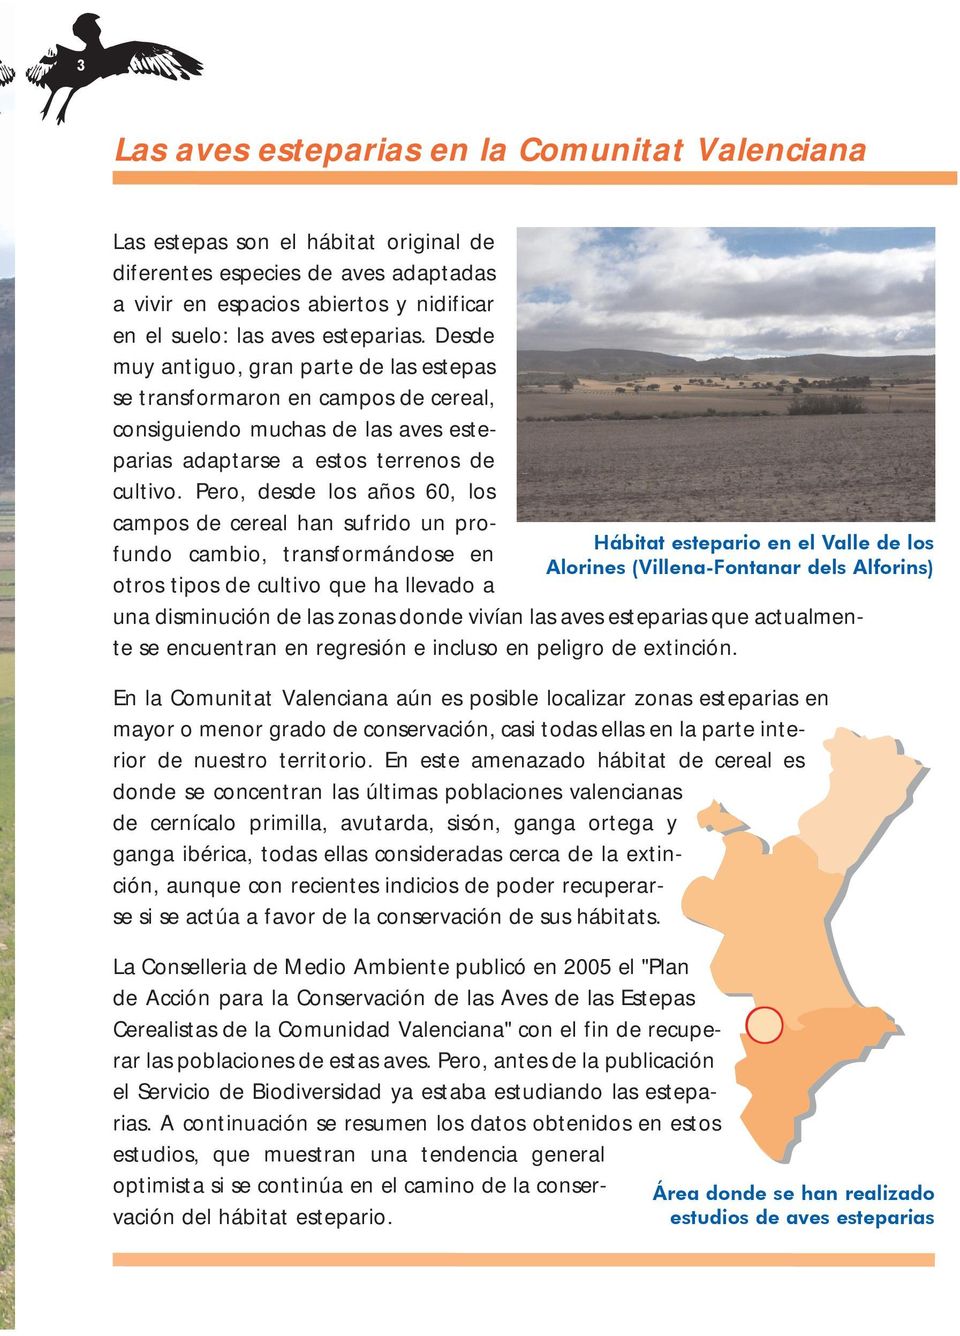 Pero, desde los años 60, los campos de cereal han sufrido un profundo cambio, transformándose en Hábitat estepario en el Valle de los Alorines (Villena-Fontanar dels Alforins) otros tipos de cultivo